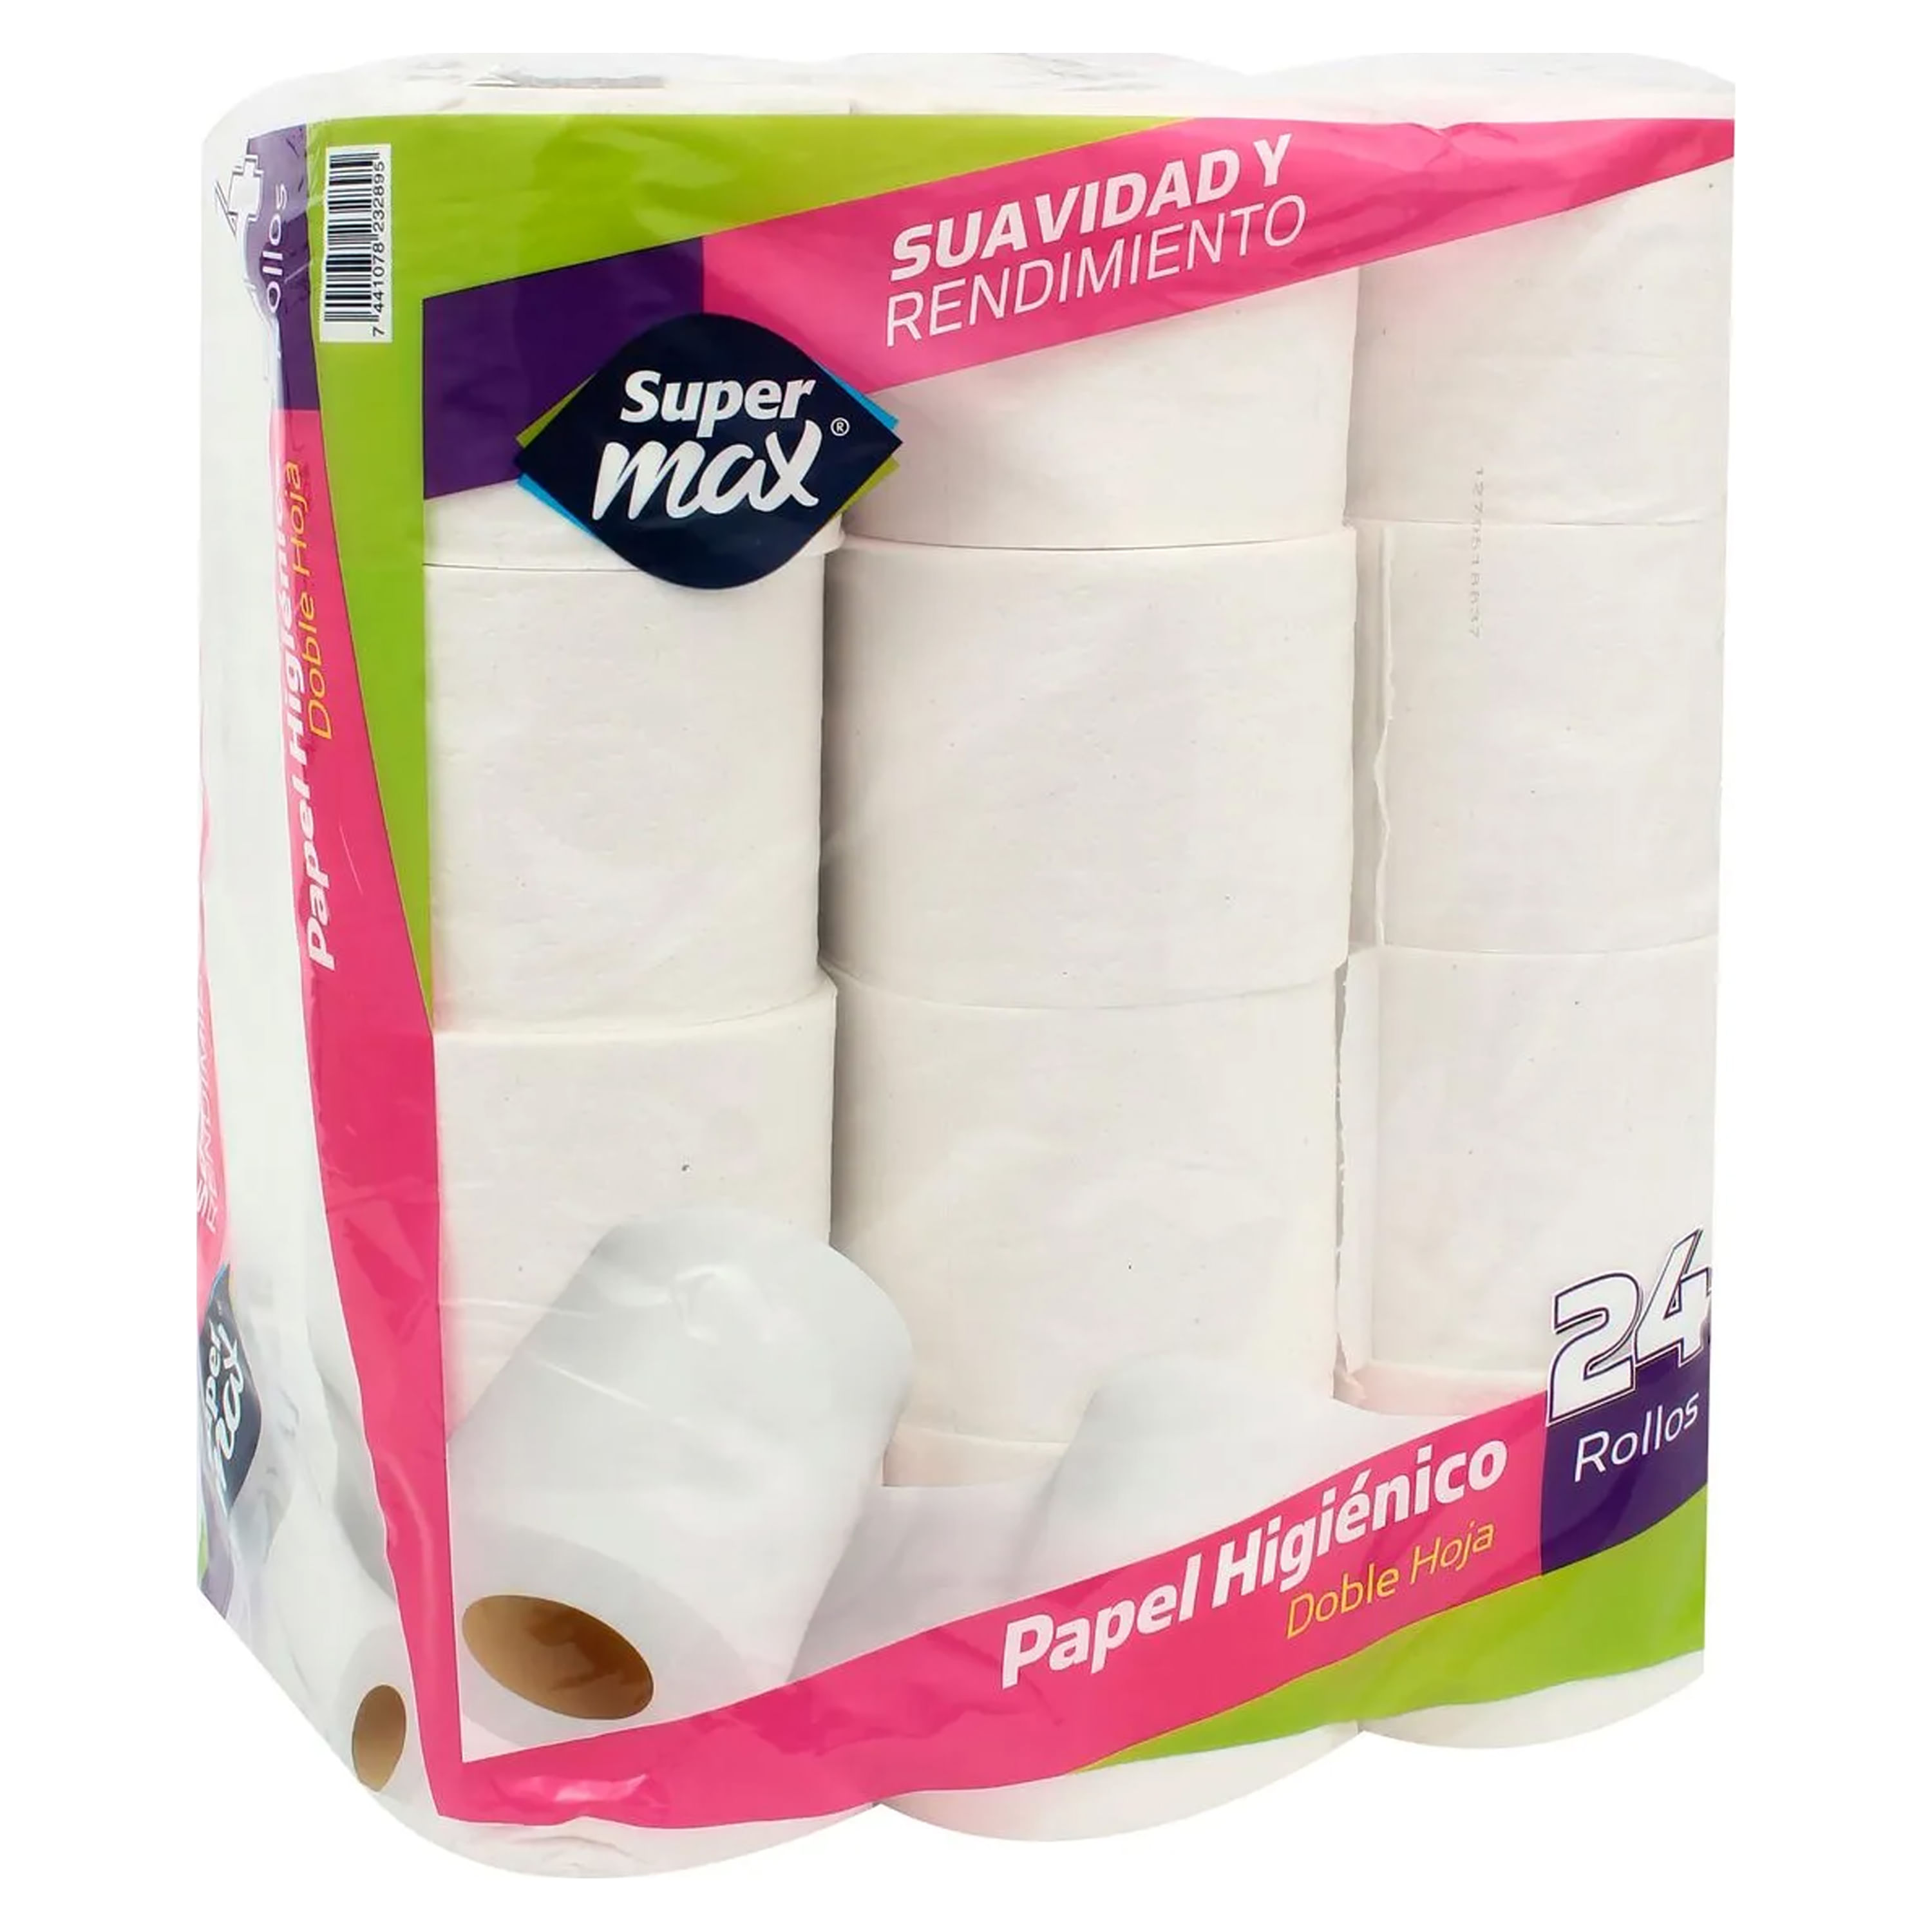 SUPER OFERTA faldo de papel higiénico (24 pack) DOBLE hoja exelente calidad  por tan solo $475.00‼️‼️